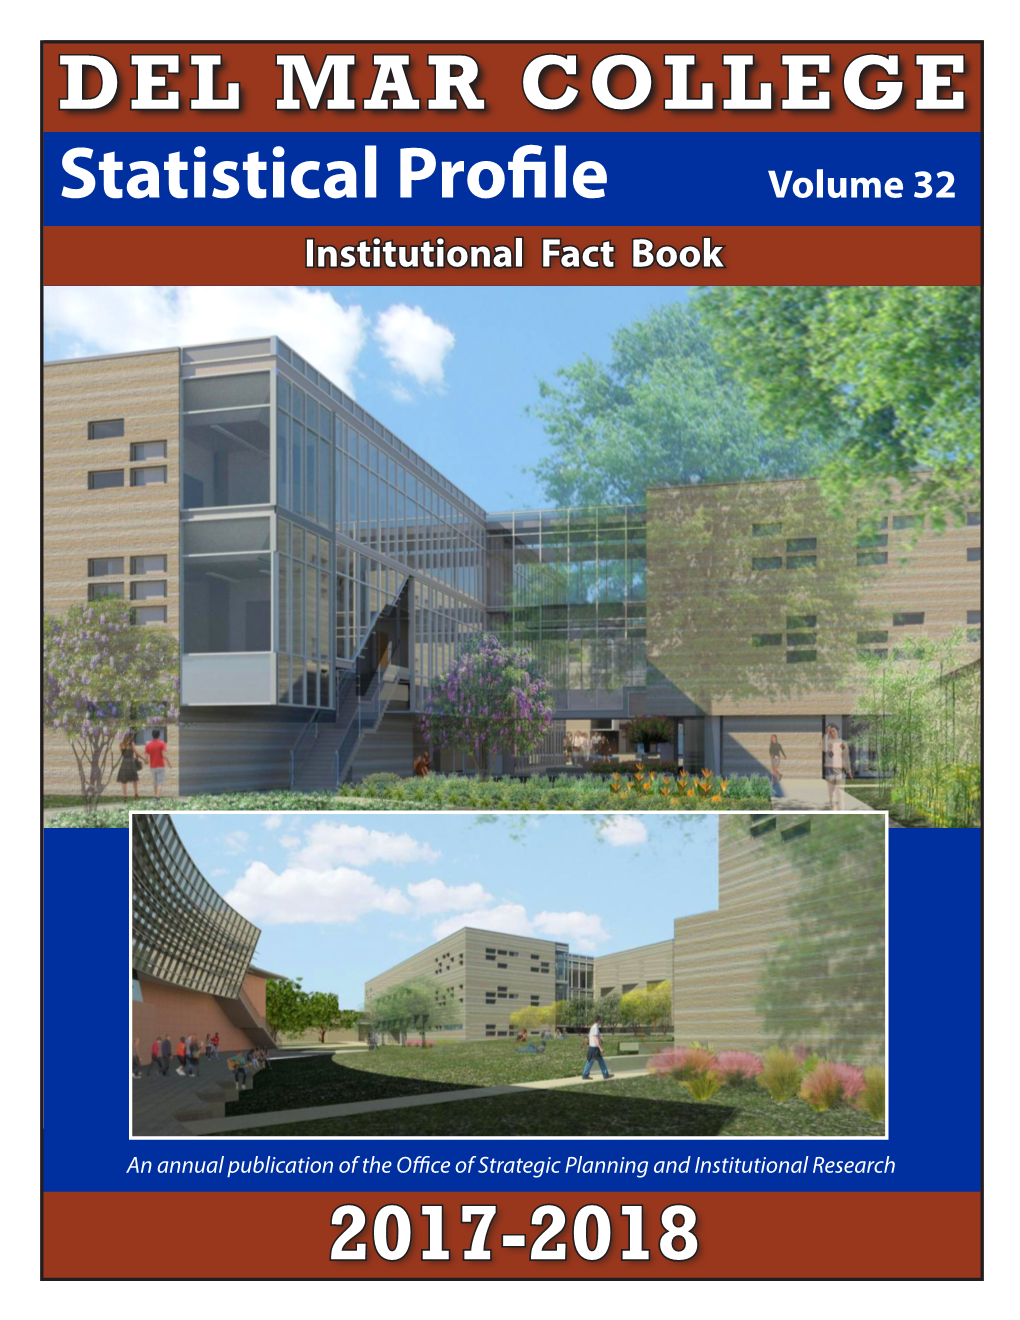 Del Mar College Statistical Profile 2017-2018